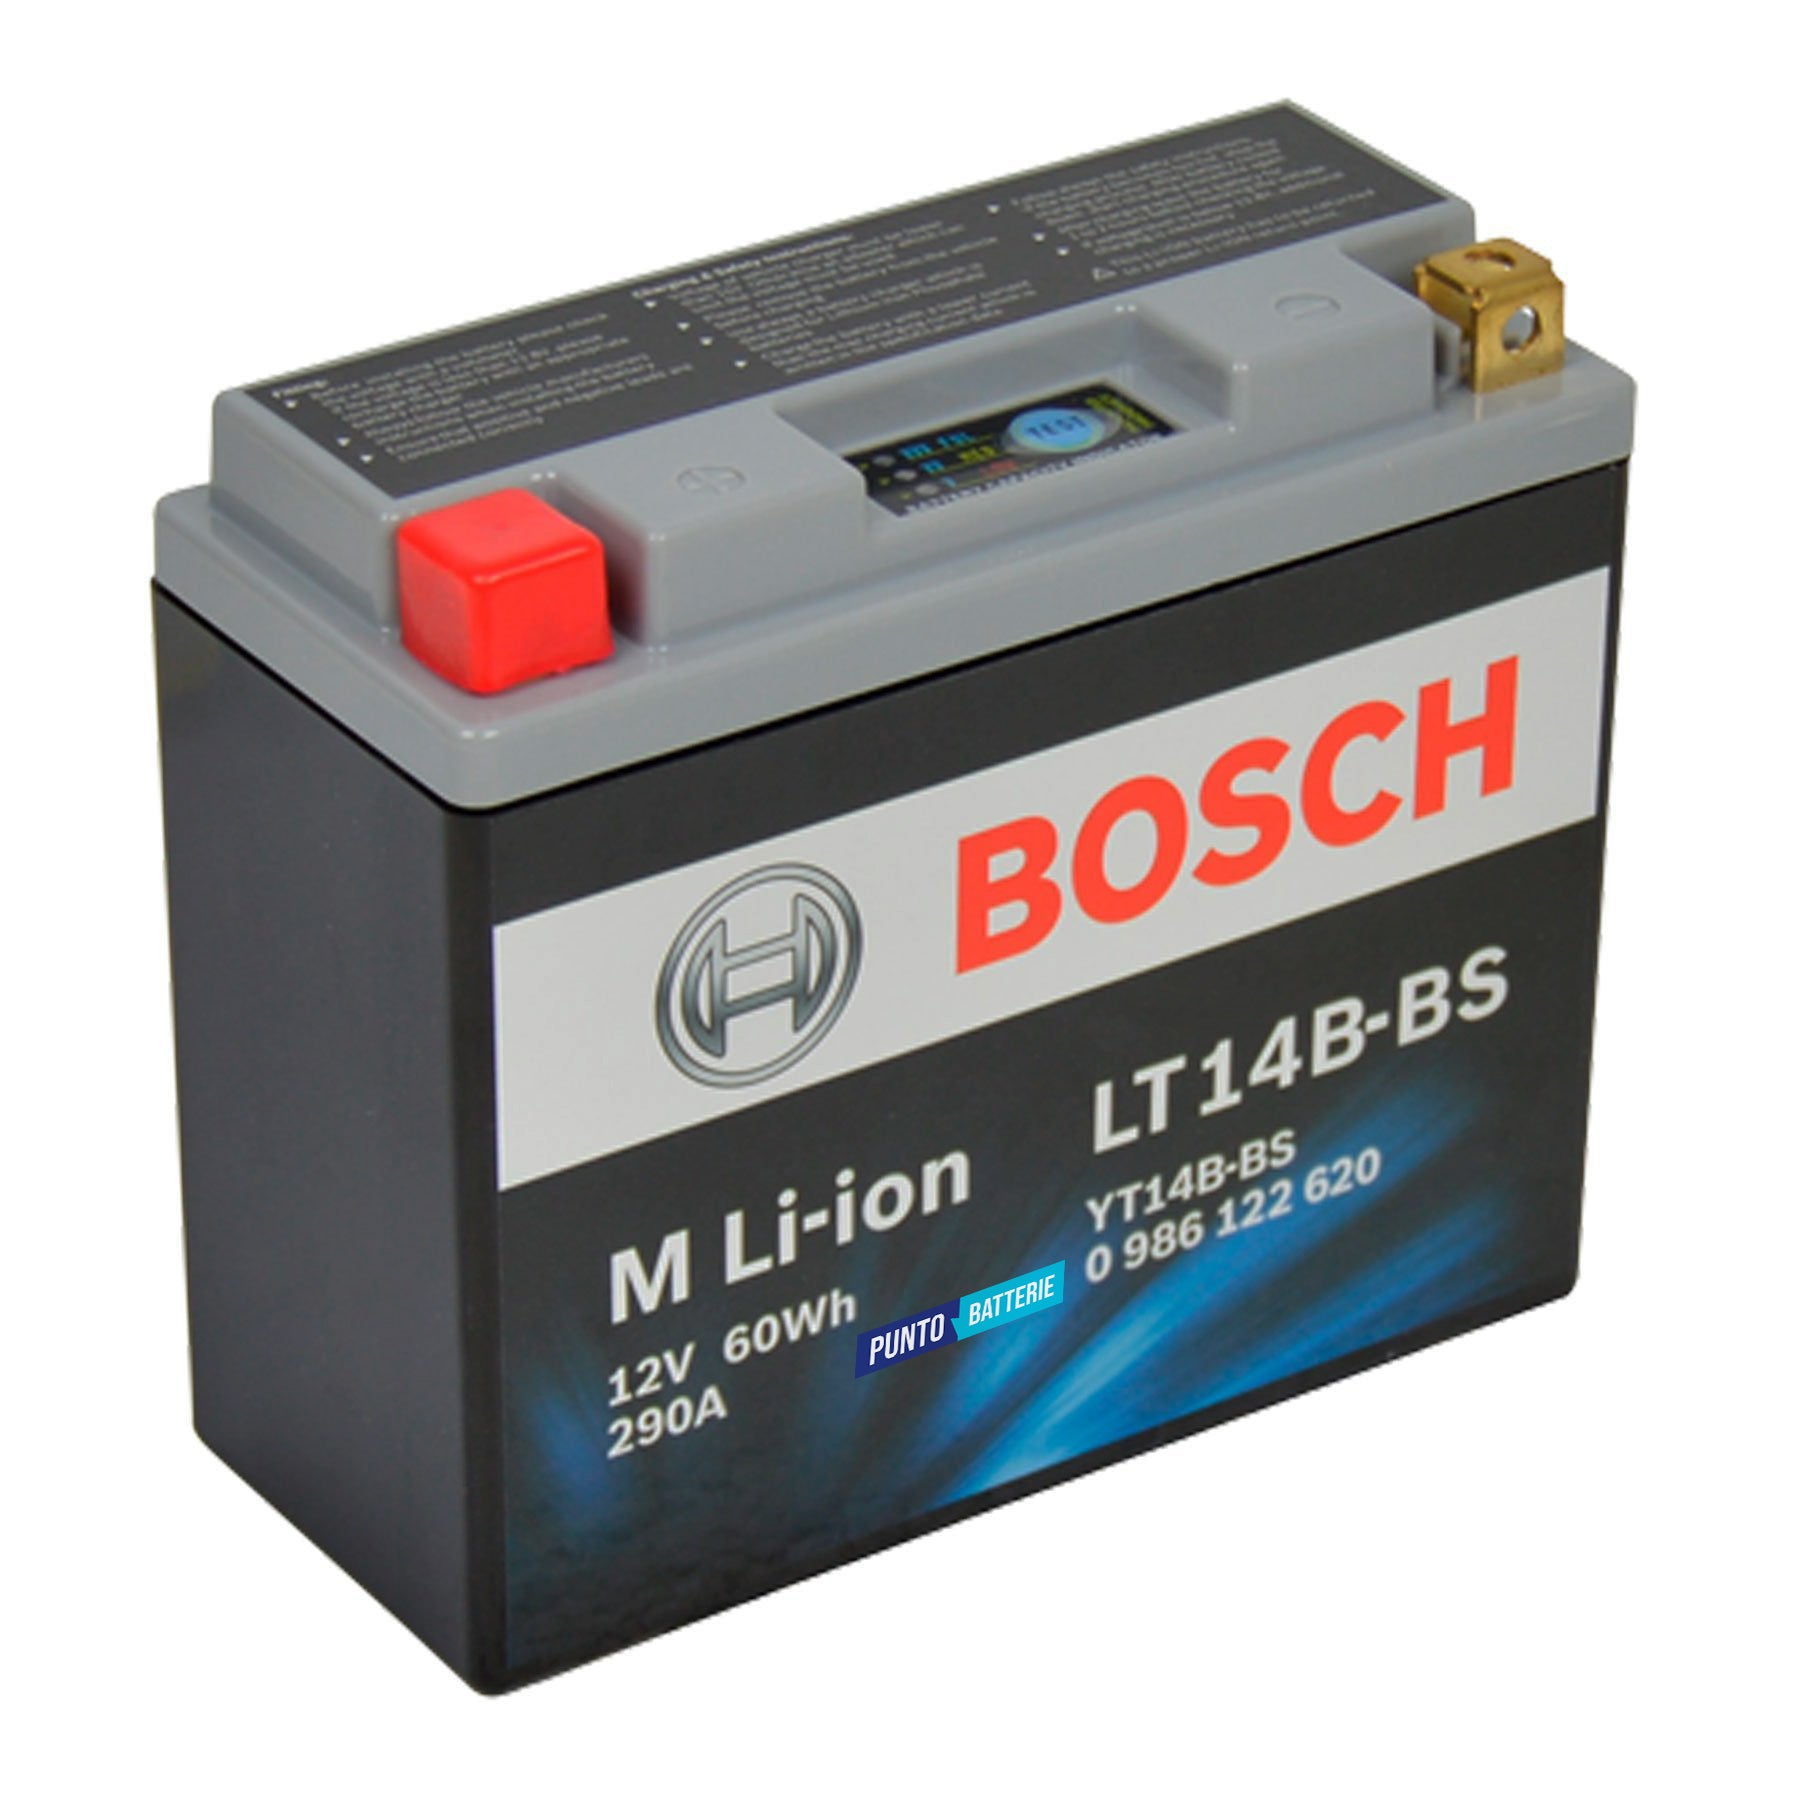 Batteria originale Bosch M Li-ion LT14B-BS, dimensioni 150 x 65 x 130, polo positivo a sinistra, 12 volt, 5 amperora, 300 ampere. Batteria per moto, scooter e powersport.